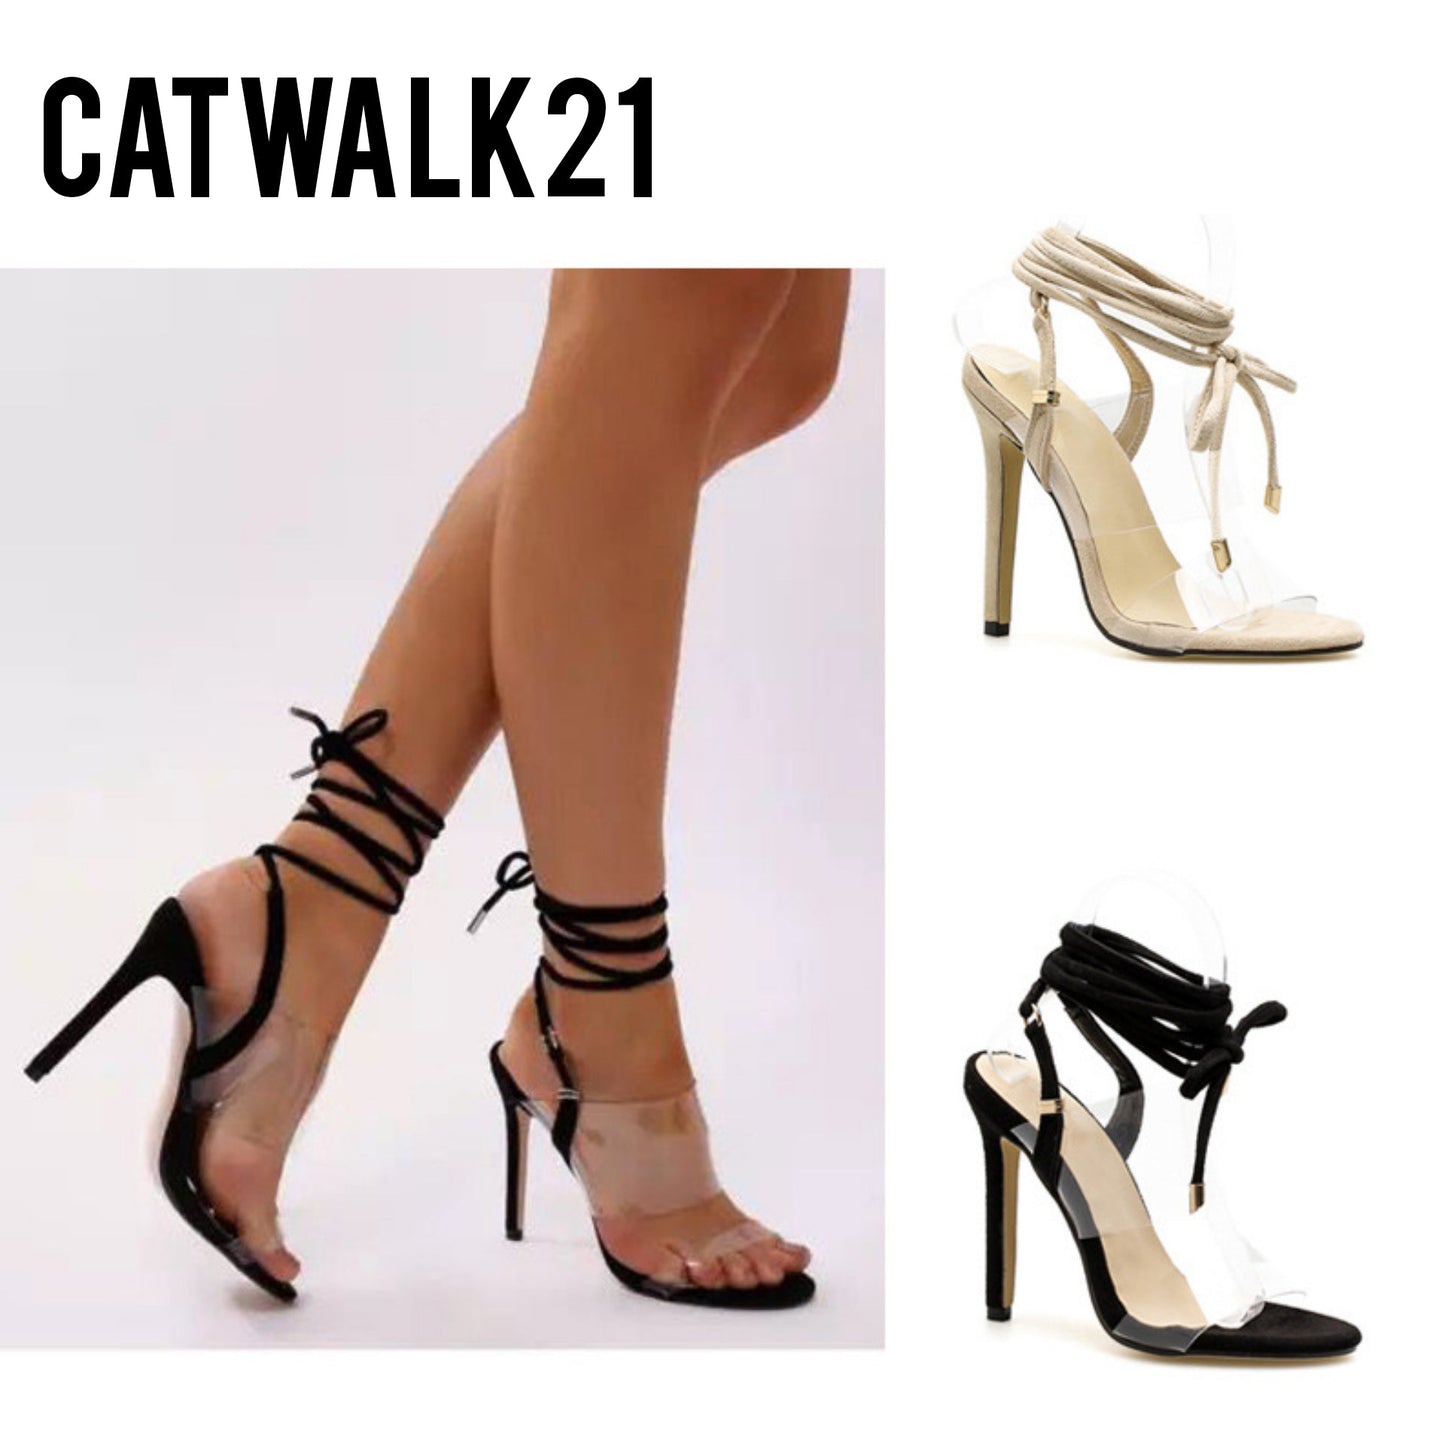 Catwalk21 Product Image